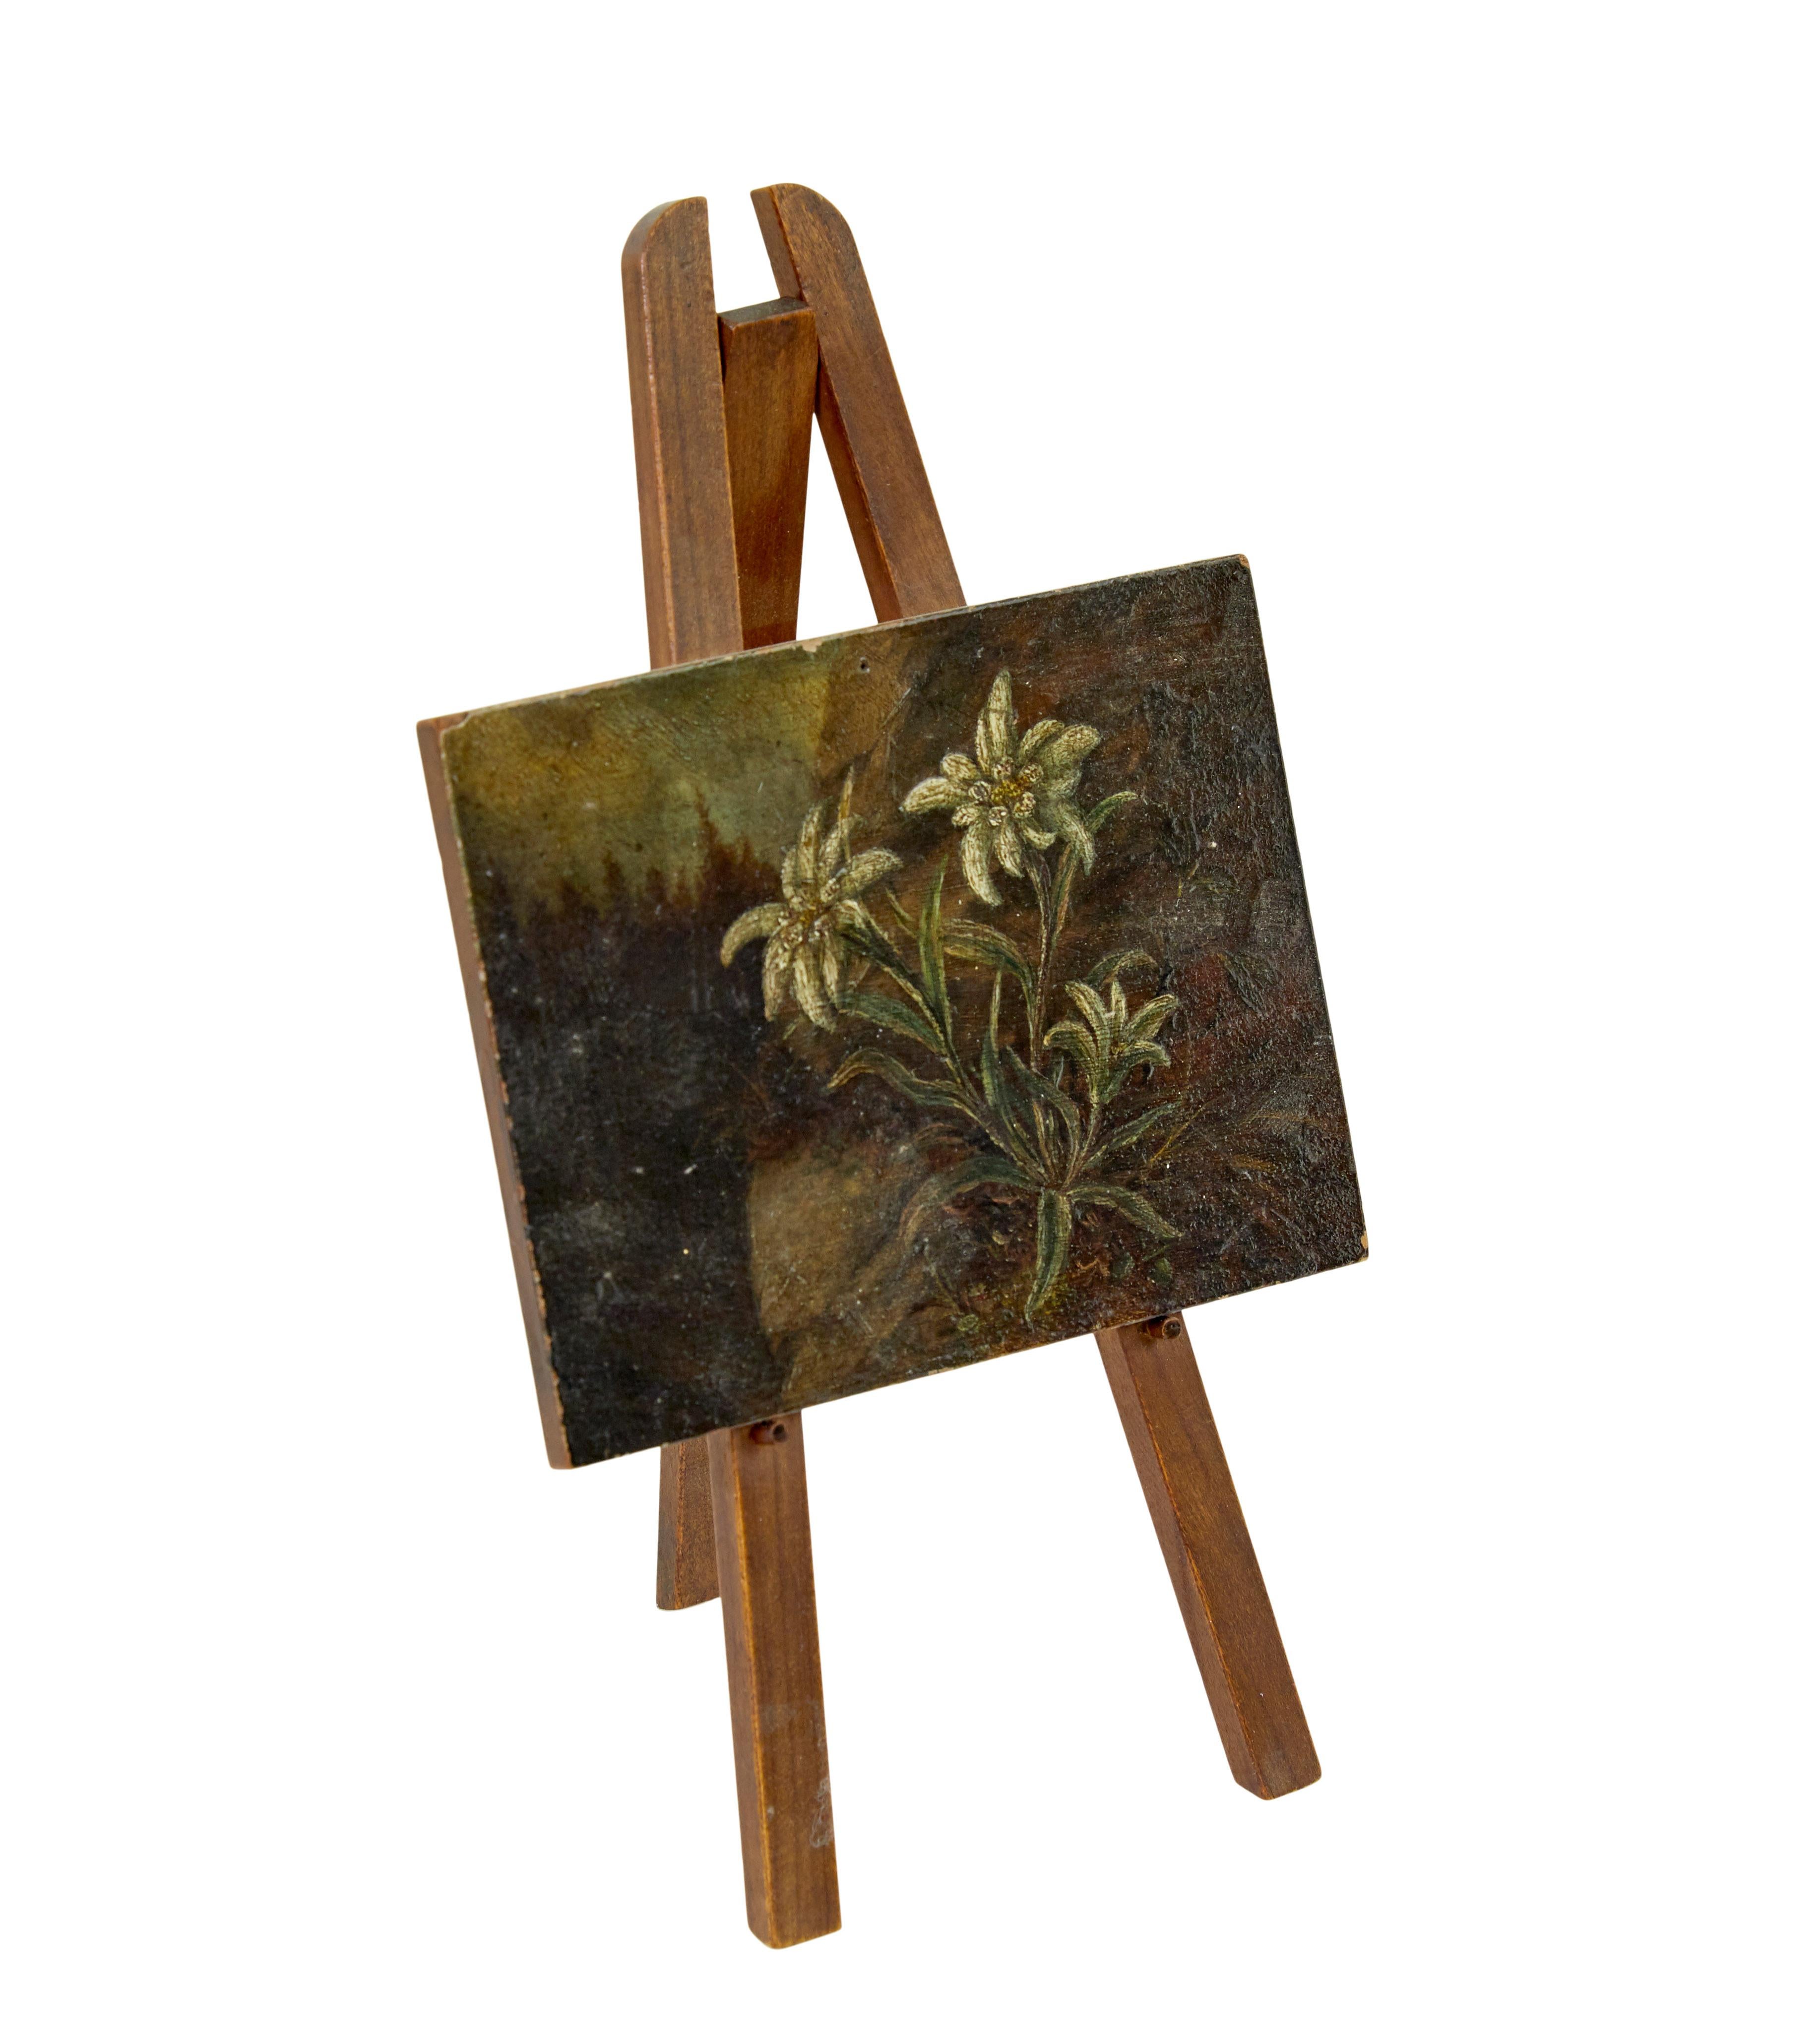 Peinture miniature à l'huile sur carton du 19e siècle représentant des edelweiss vers 1880.

Tableau d'edelweiss de bureau de belle qualité, présenté sur un chevalet en bois.

Pertes mineures à la peinture.